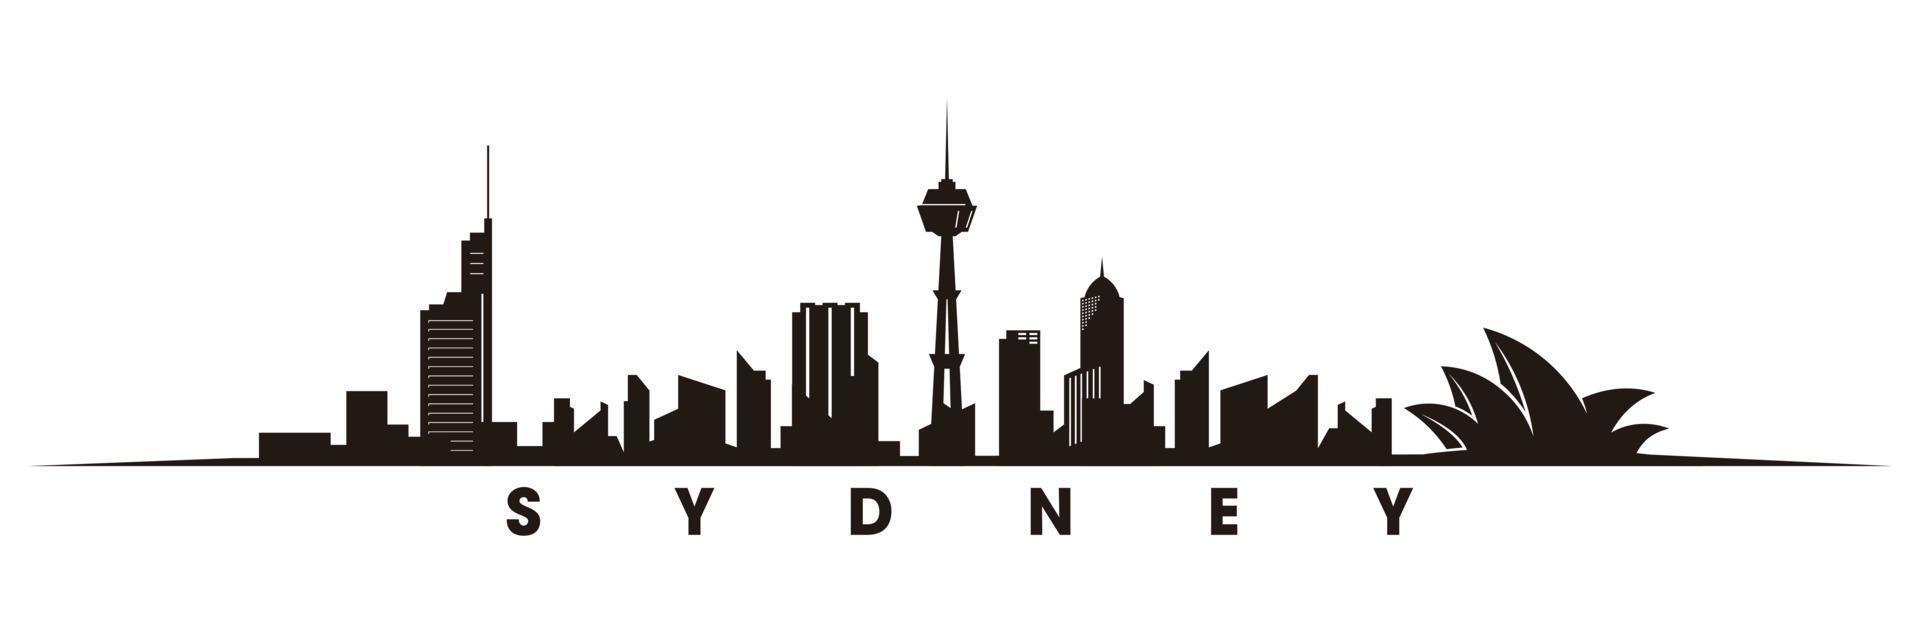 Sydney Horizont und Sehenswürdigkeiten Silhouette Vektor